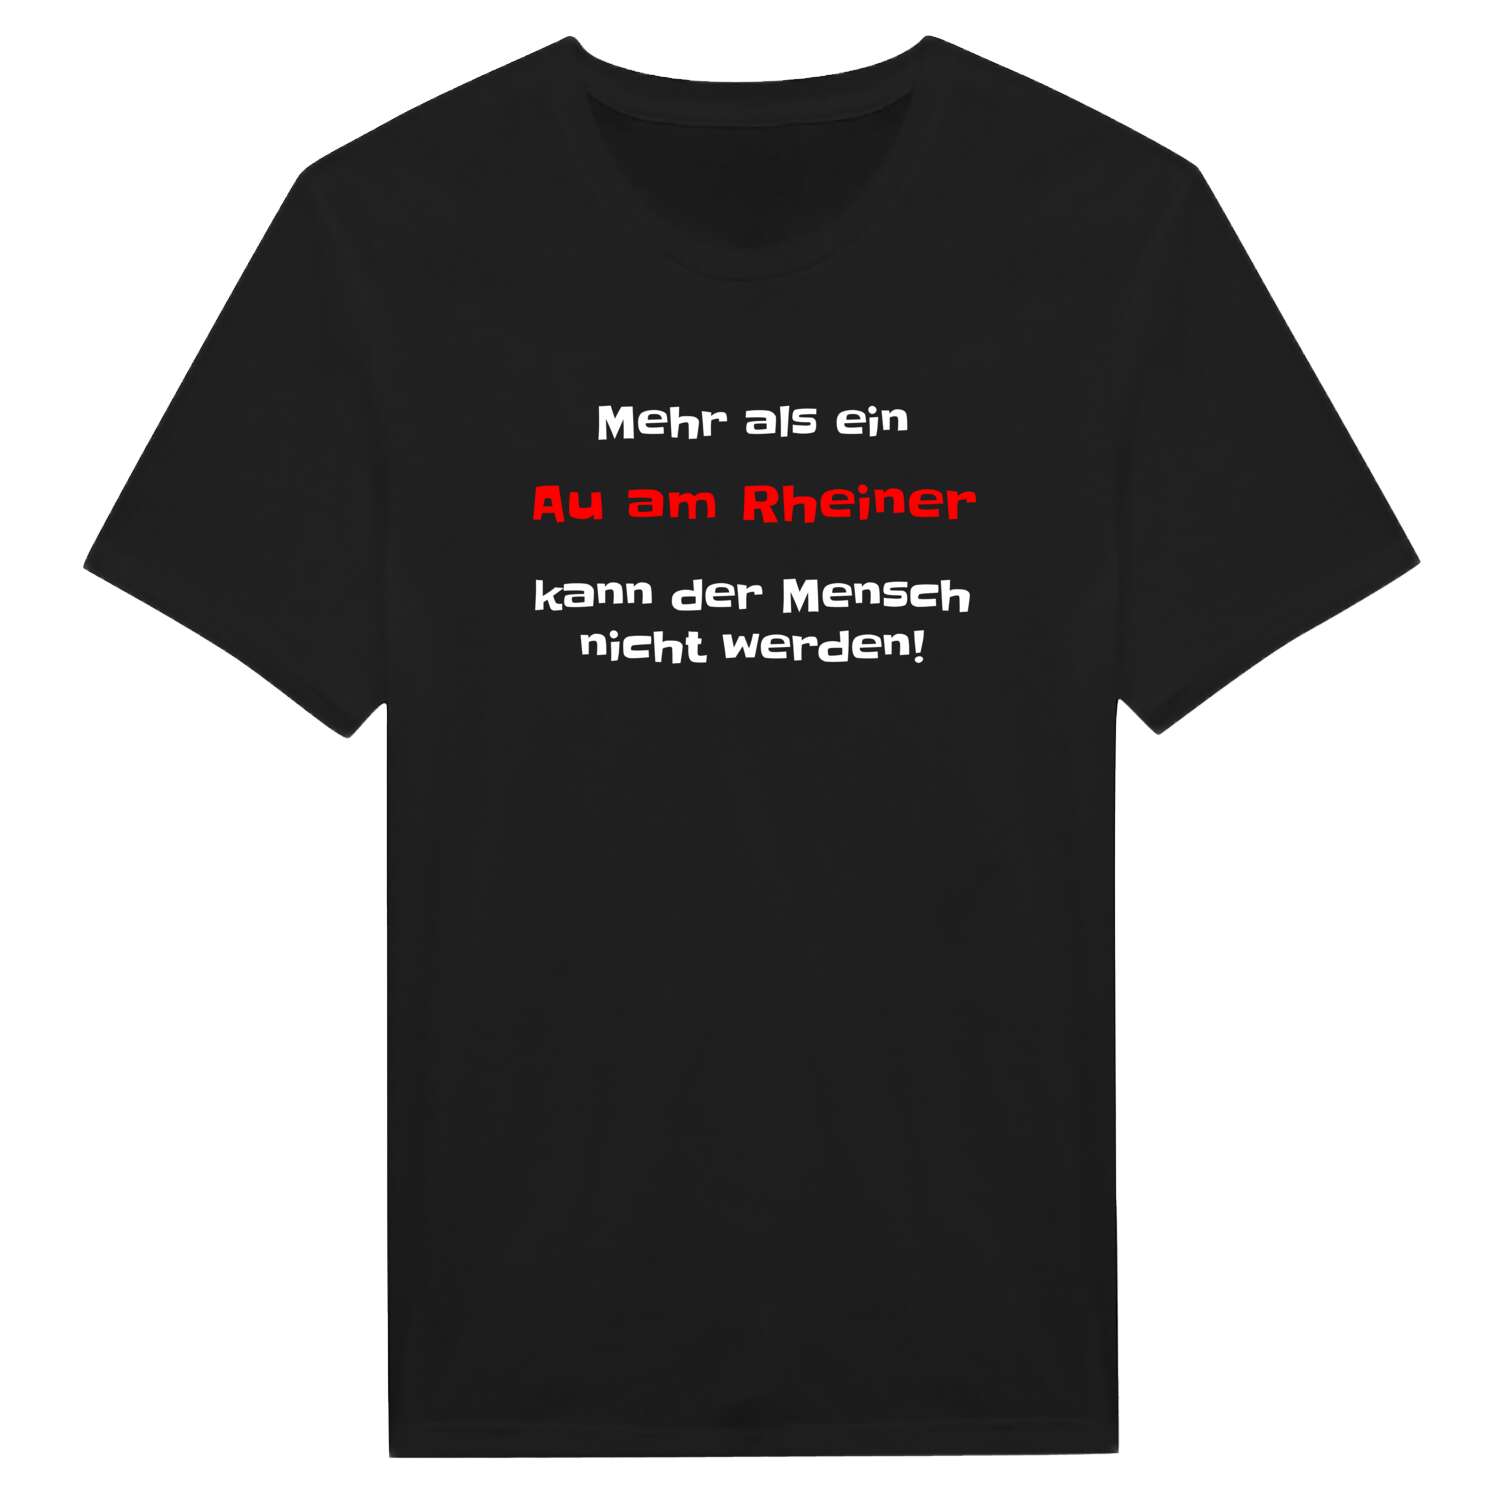 Au am Rhein T-Shirt »Mehr als ein«